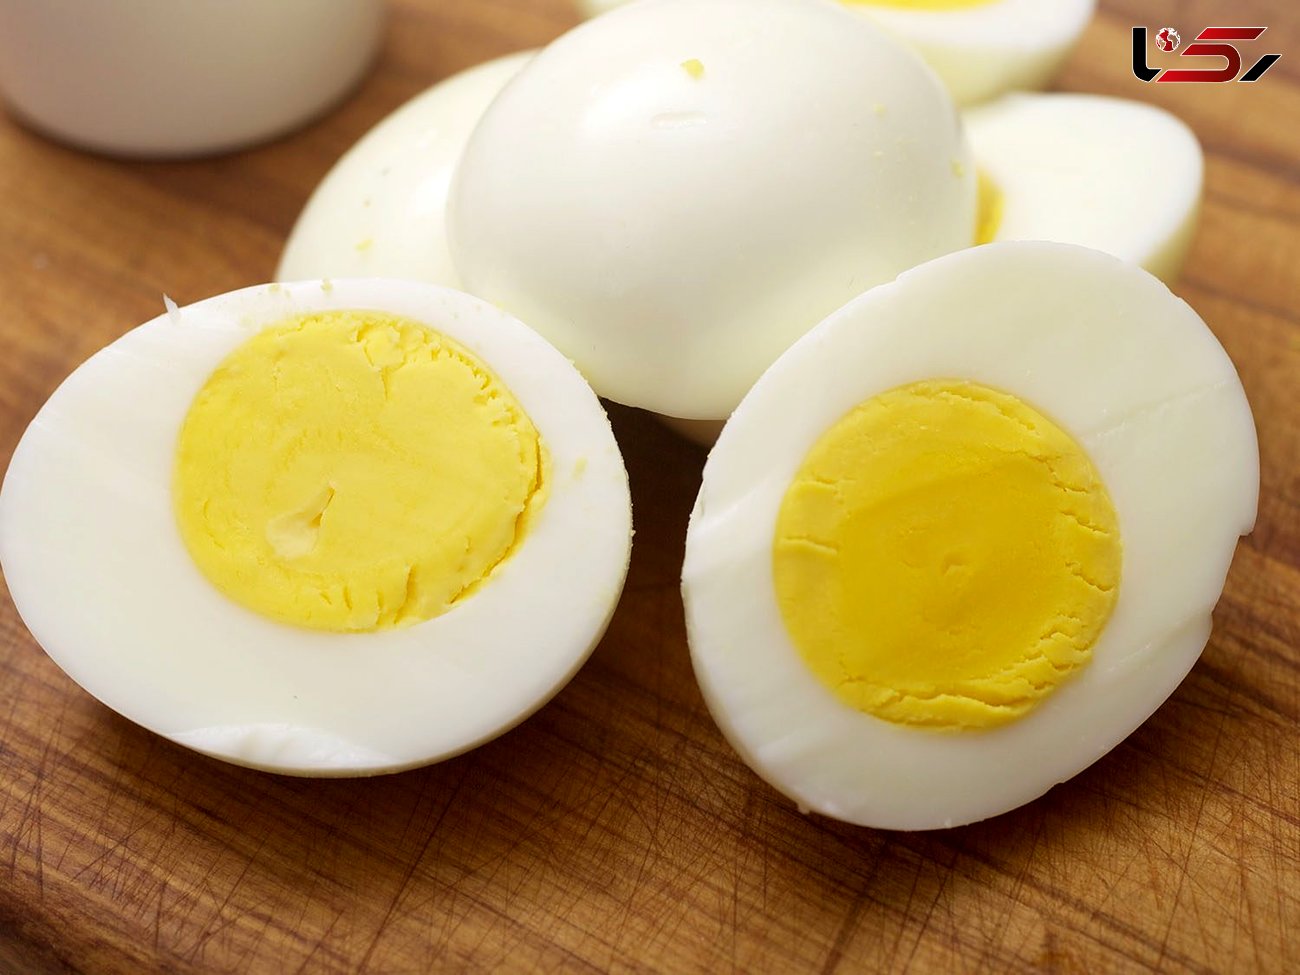 نکات مهم در مصرف تخم مرغ